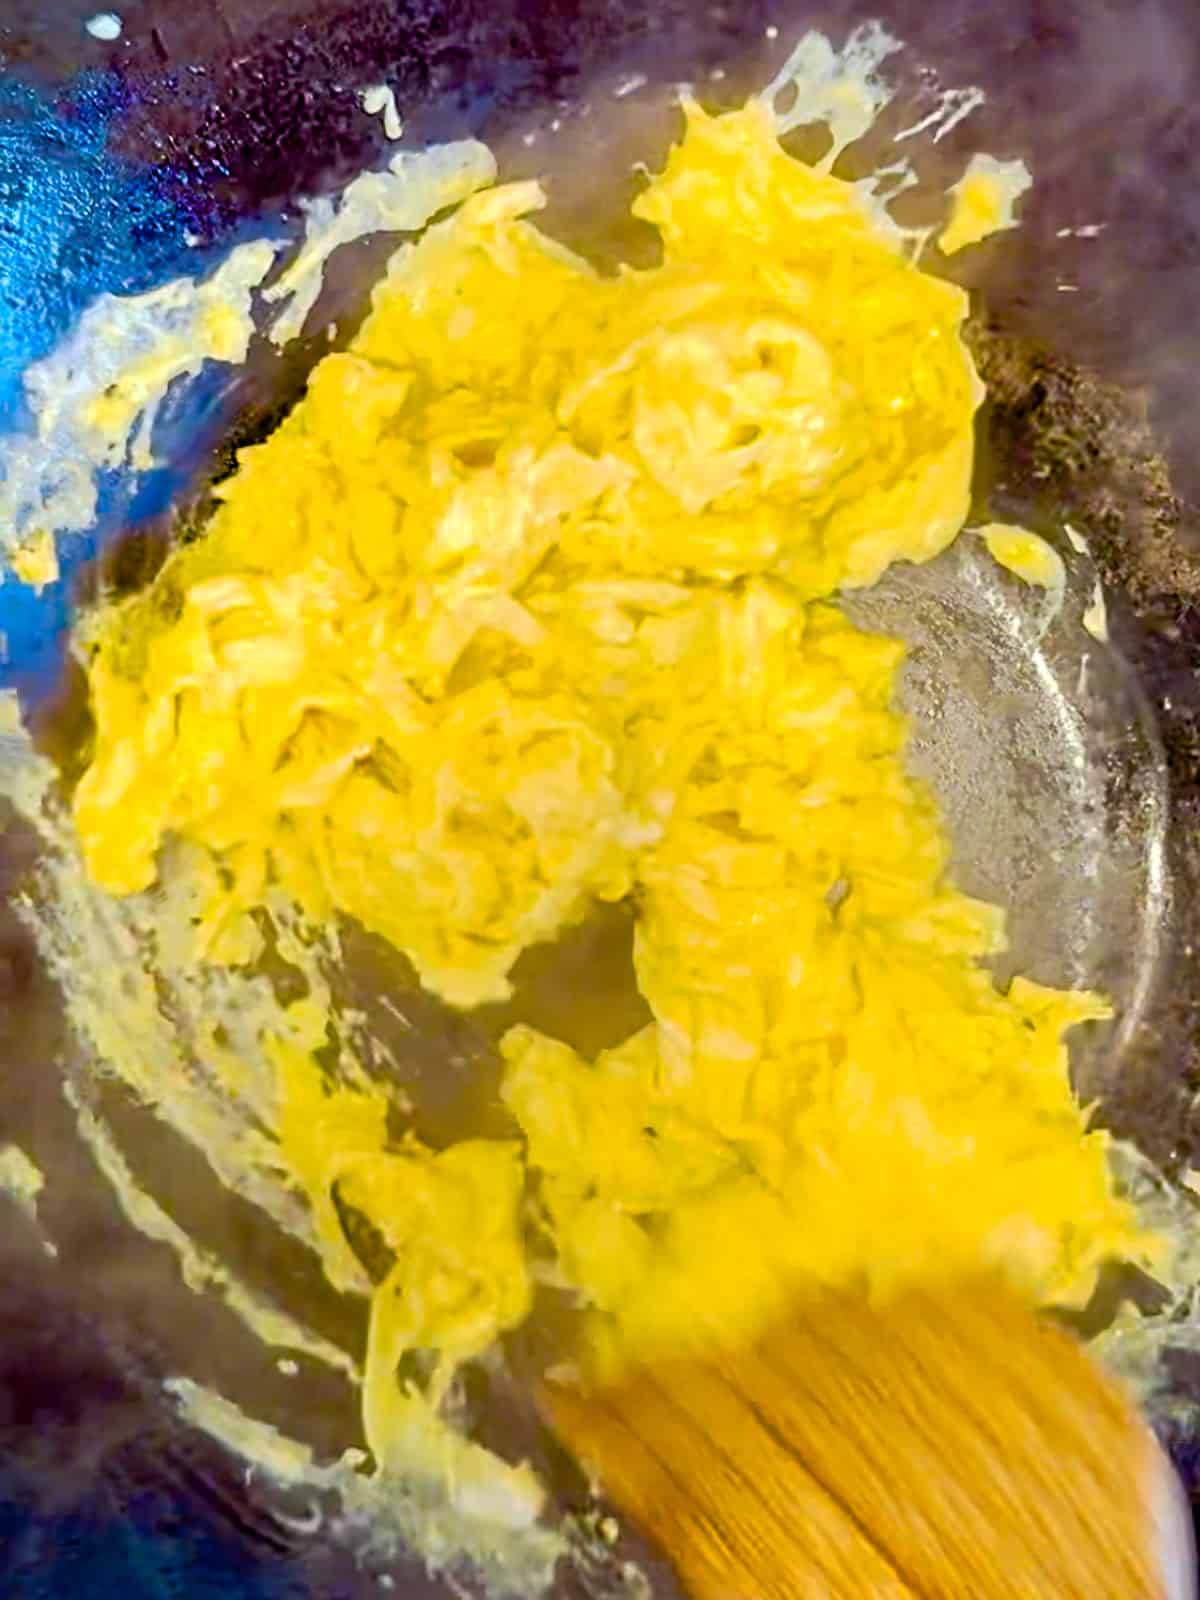 Scrambling eggs in a wok.